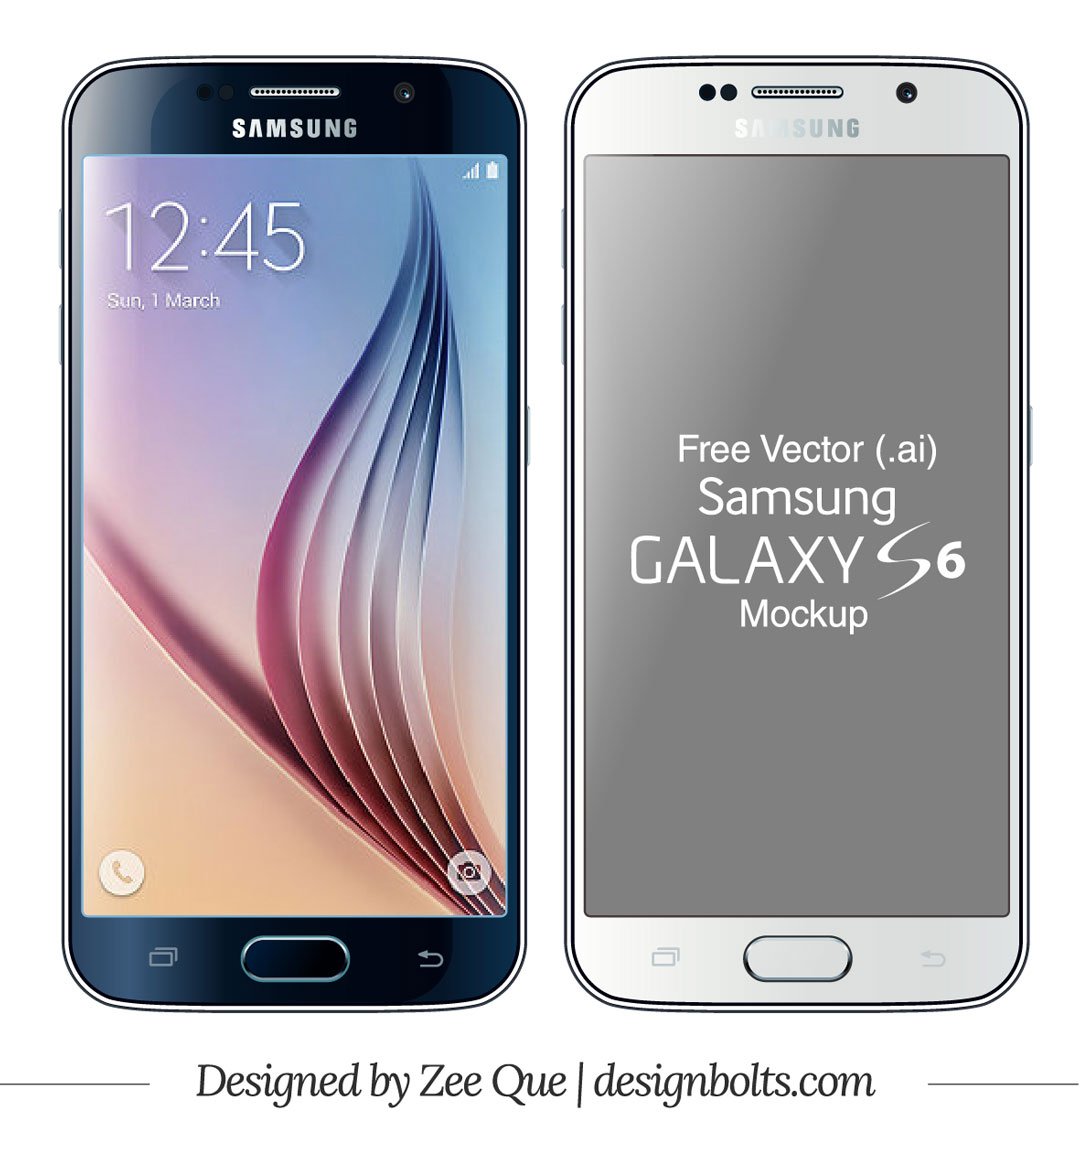 Harga dan Sepsifikasi Samsung S6 Terbaru